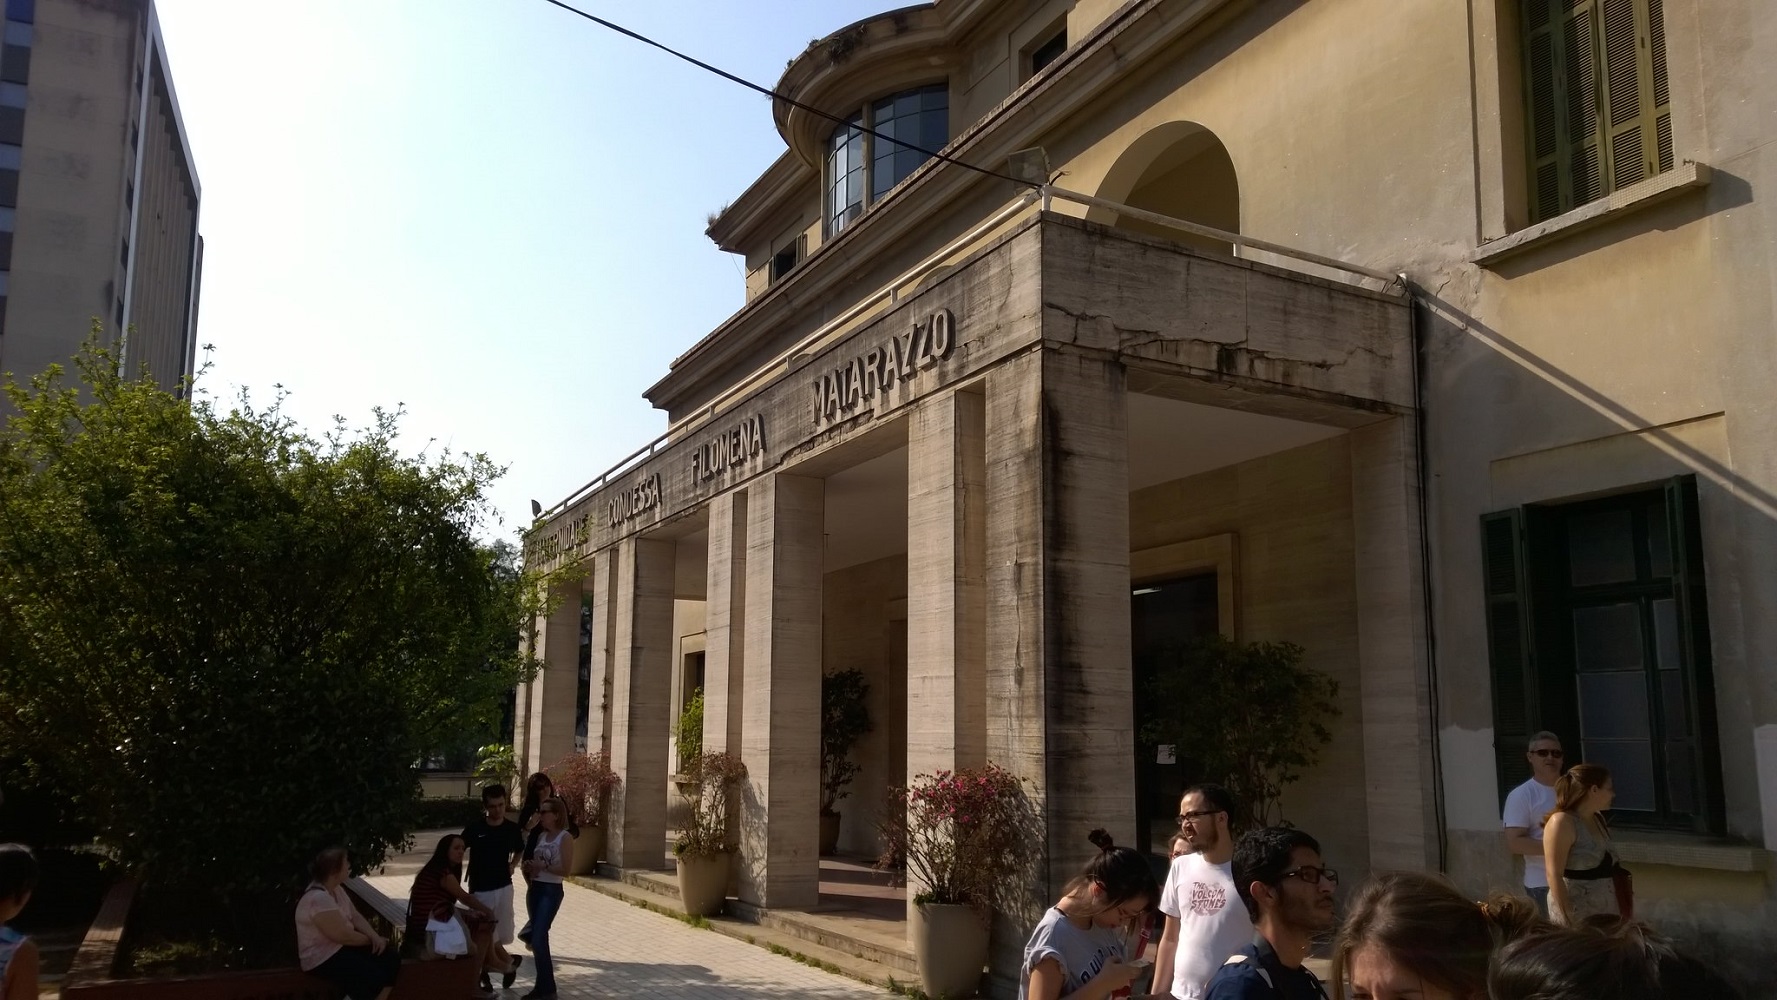 Cidade Matarazzo - O estilo neoclássico pode ser observado na fachada da Maternidade Condessa Filomena Matarazzo